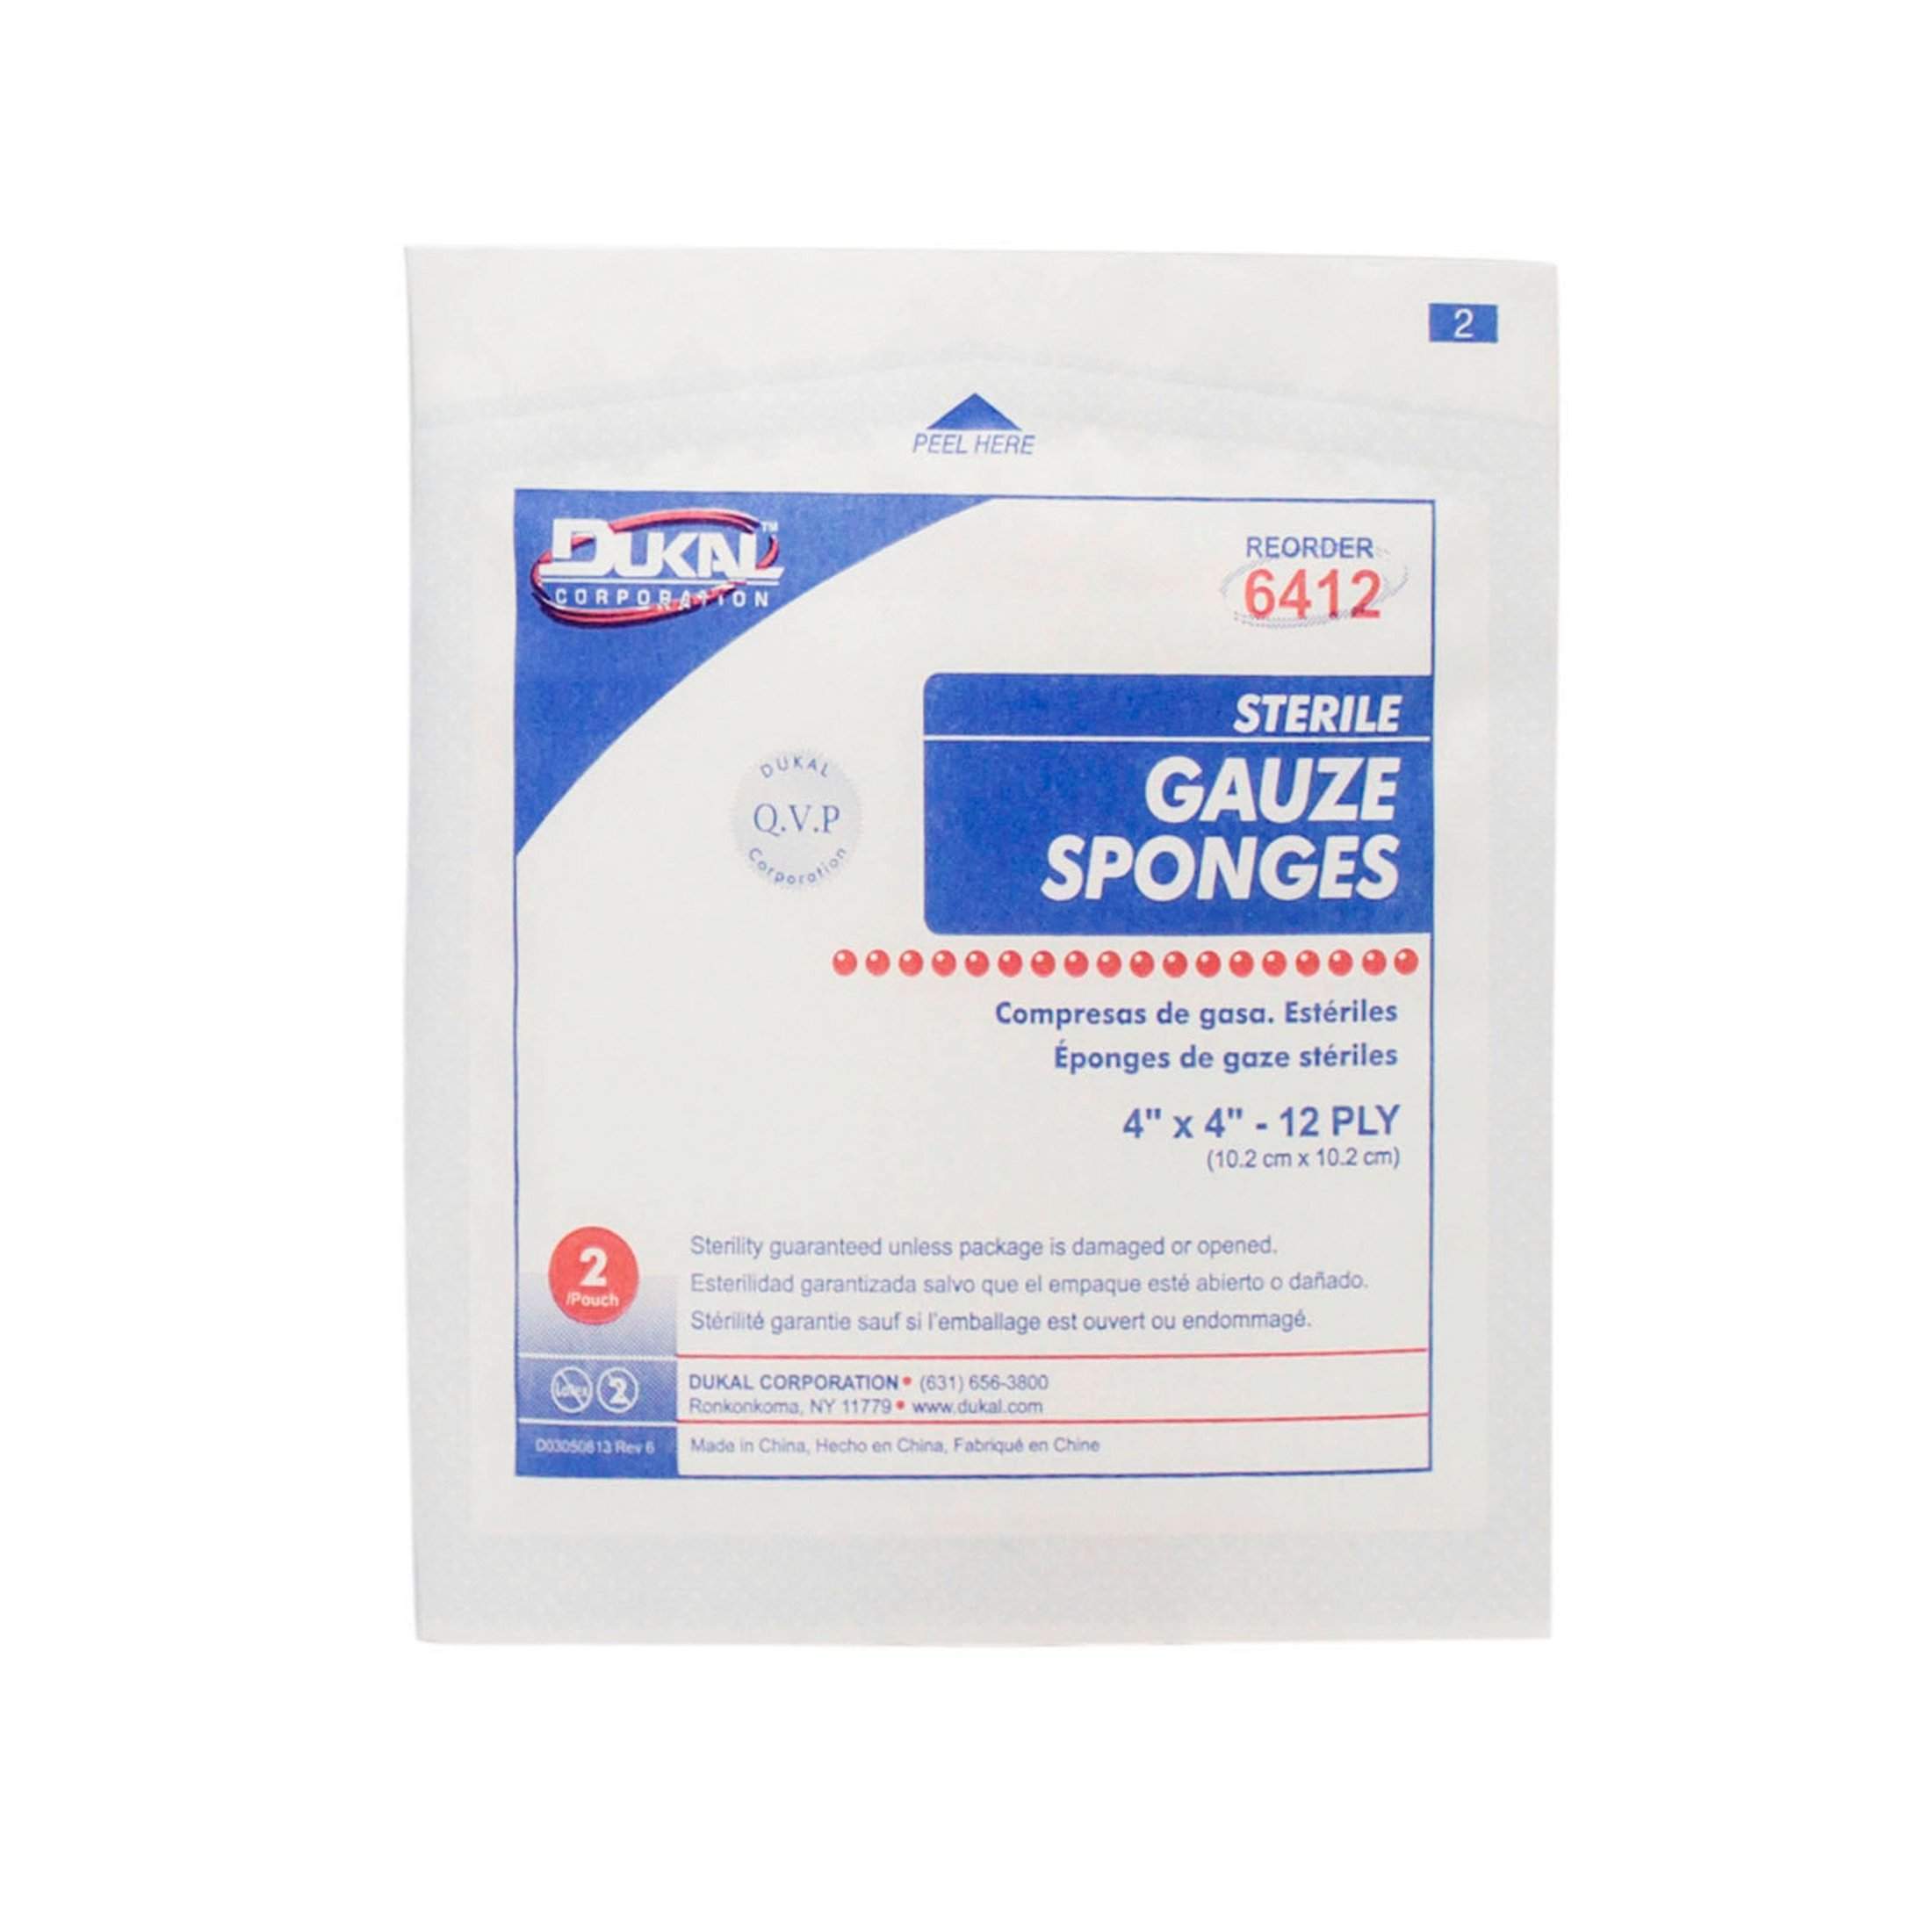 Dukal Gauze Sponge - Sterile, 4